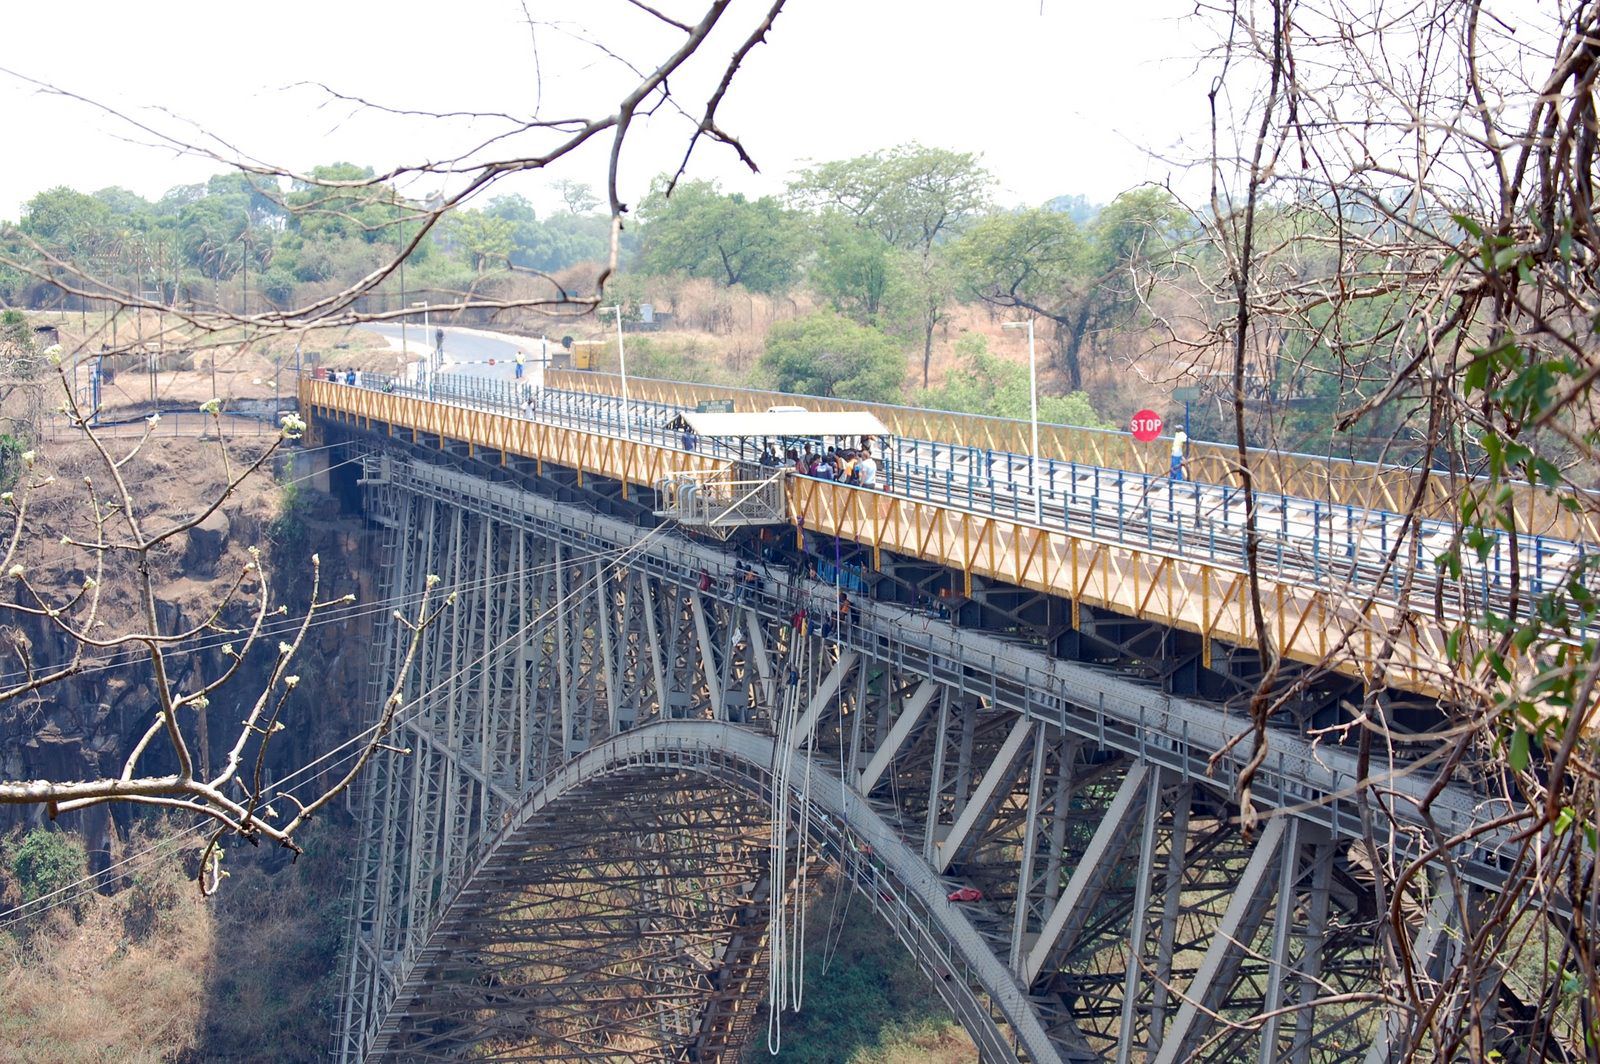 Мост у водопада Виктория, между Замбией и Зимбабве - Замбия фото #8518